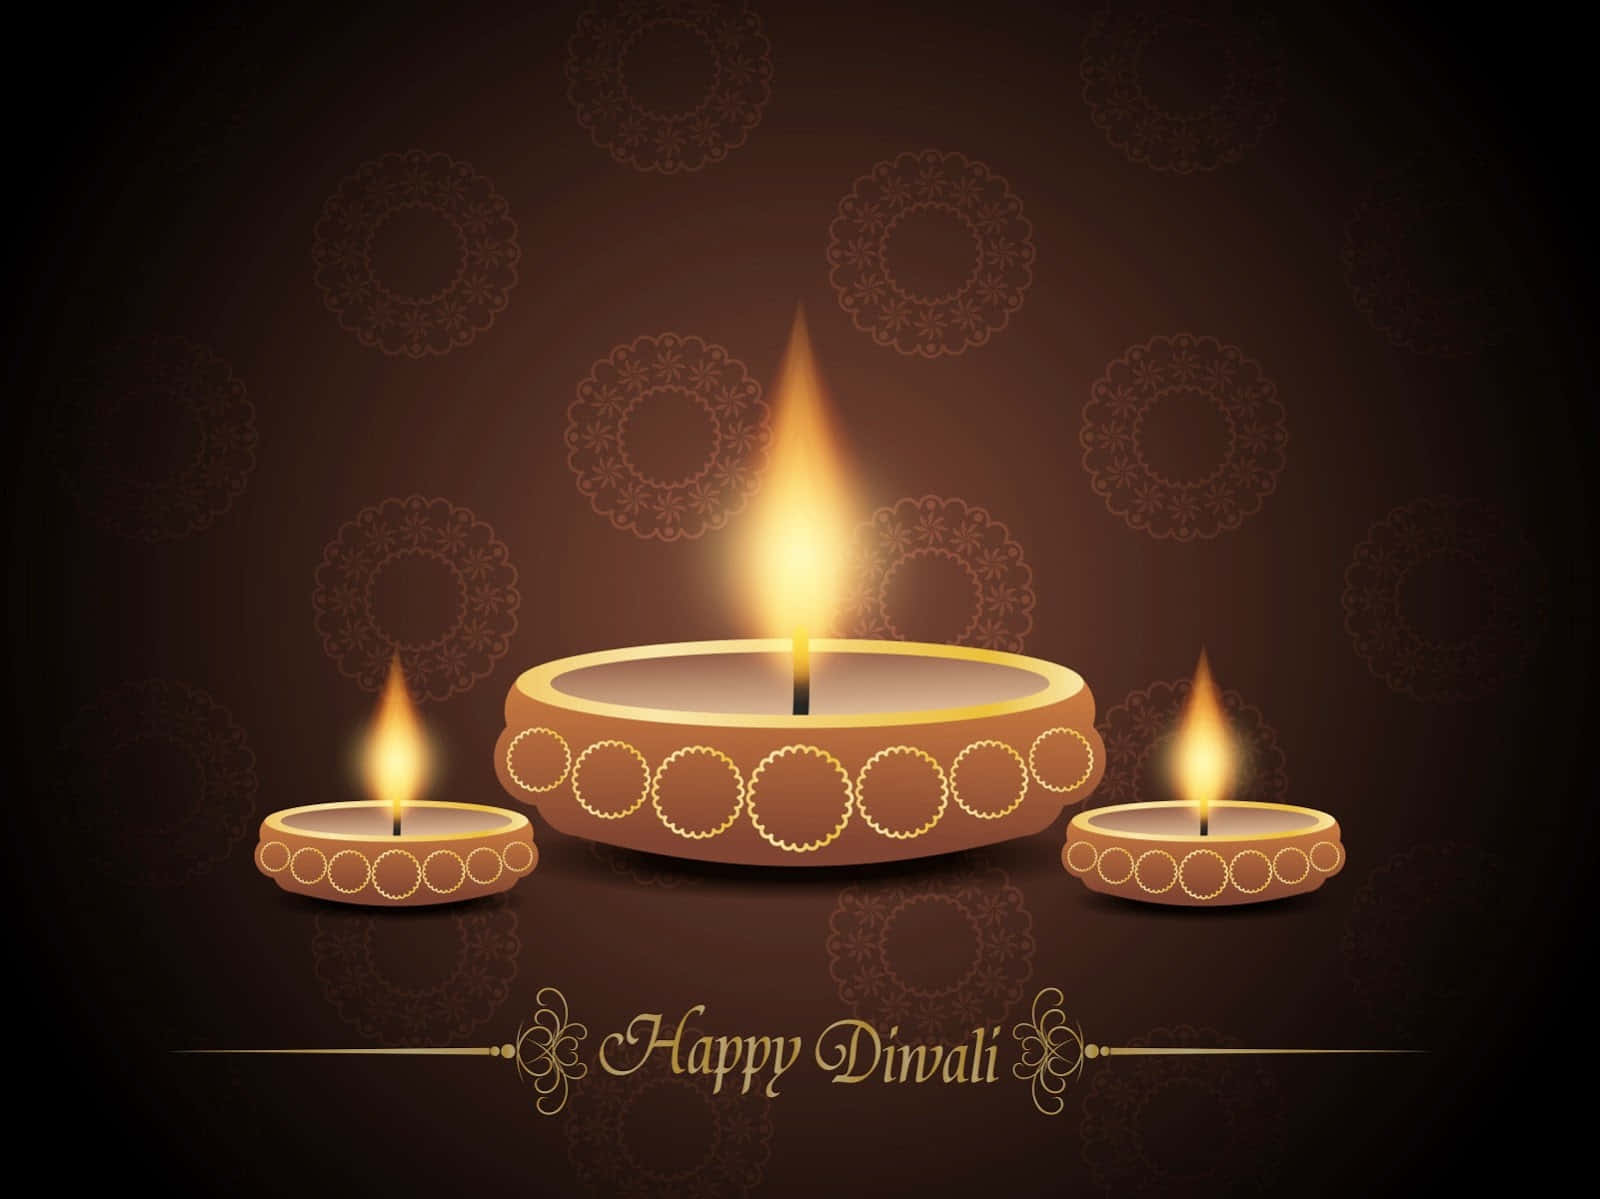 Download Imagens Do Happy Diwali Wallpaper